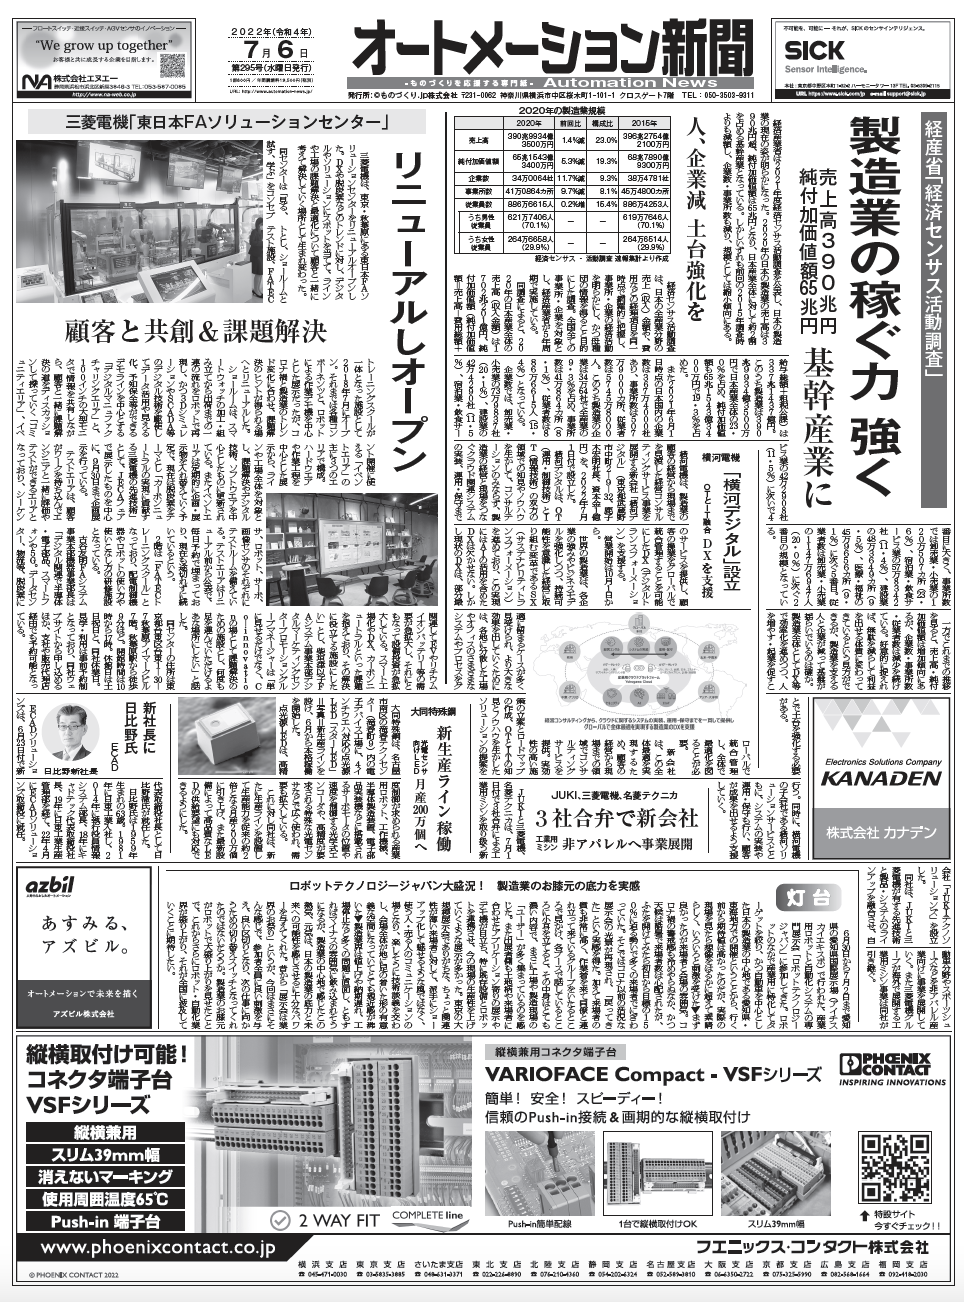 【オートメーション新聞7月6日号】日本の製造業の現在地／三菱電機FAセンターリニューアル／横河電機、デジタル新会社など